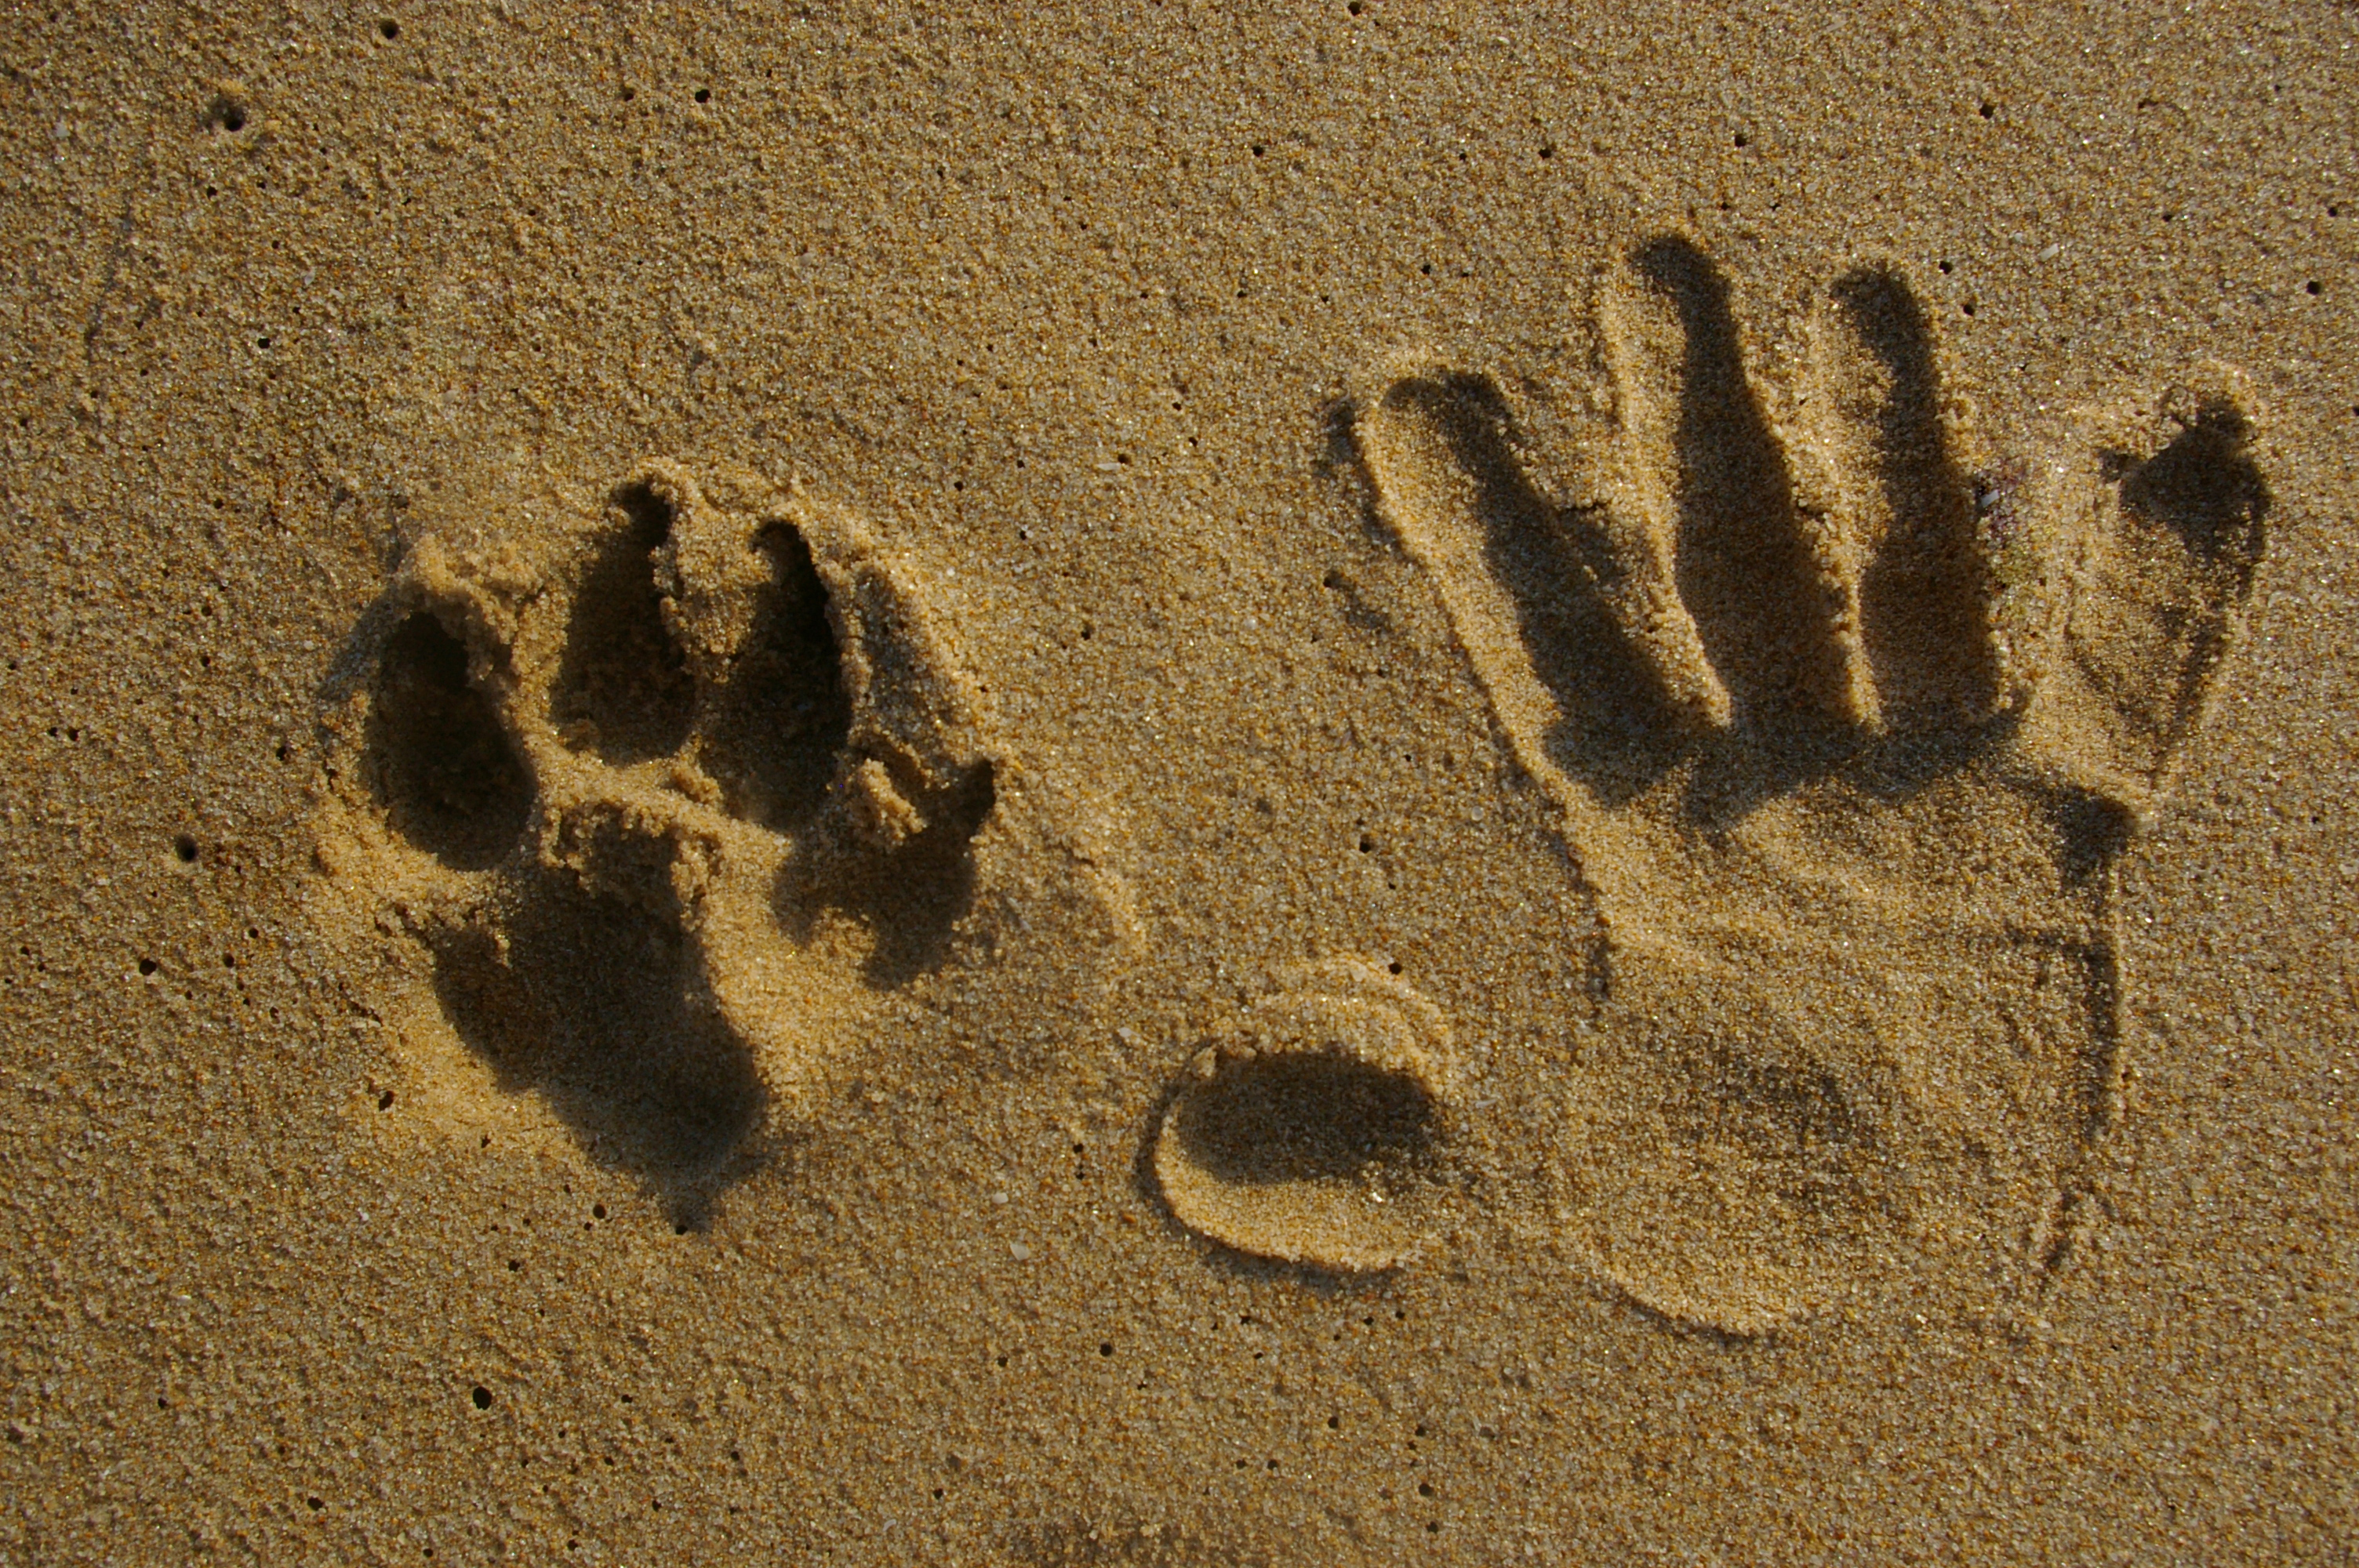 Доверие след. Следы животных на песке. Следы собаки на песке. Следы коровы на песке. Отпечатки лап на песке.